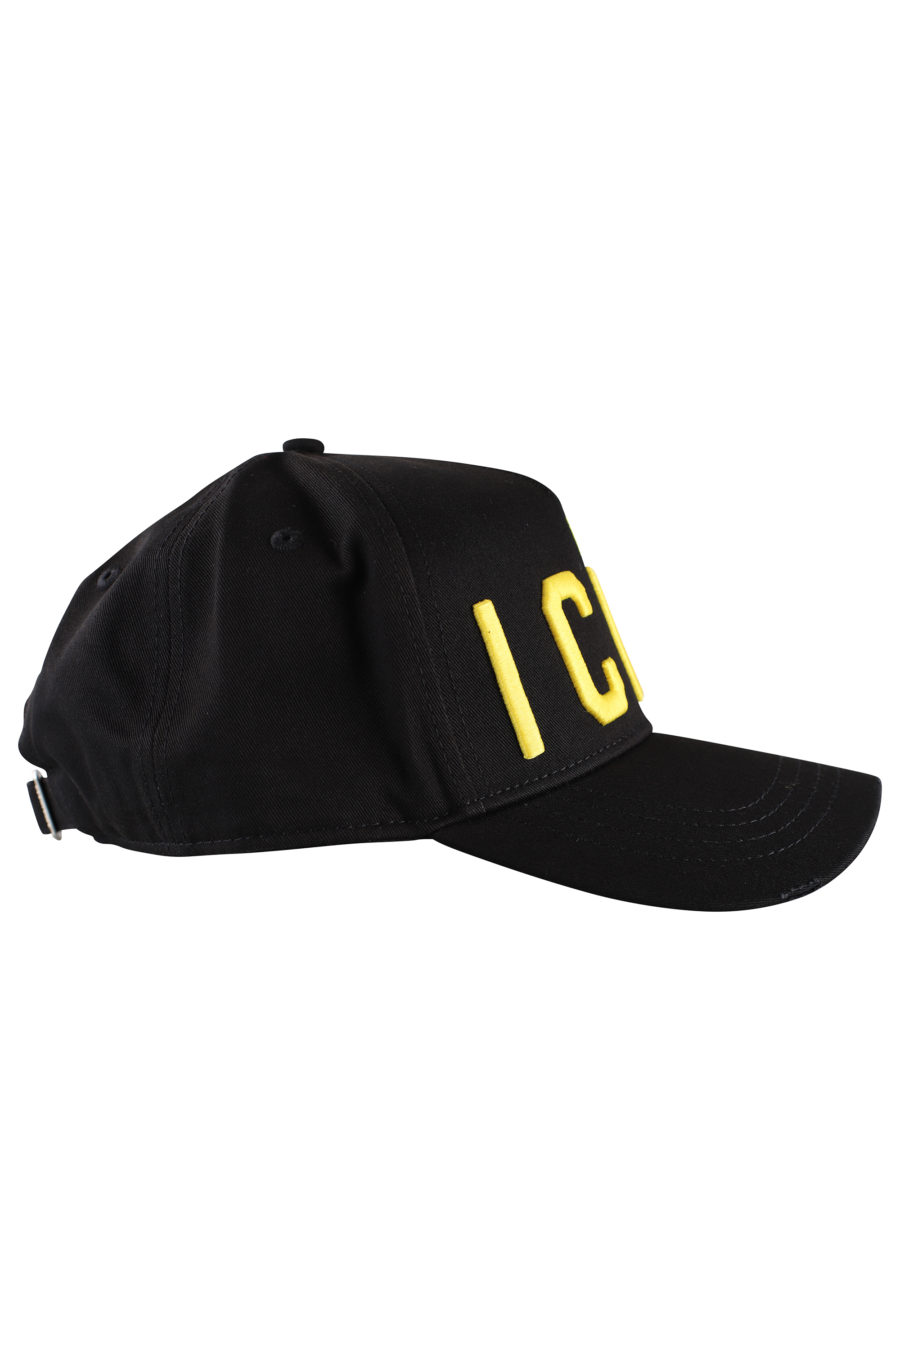 Gorra negra ajustable con logo "icon" amarillo - IMG 9987